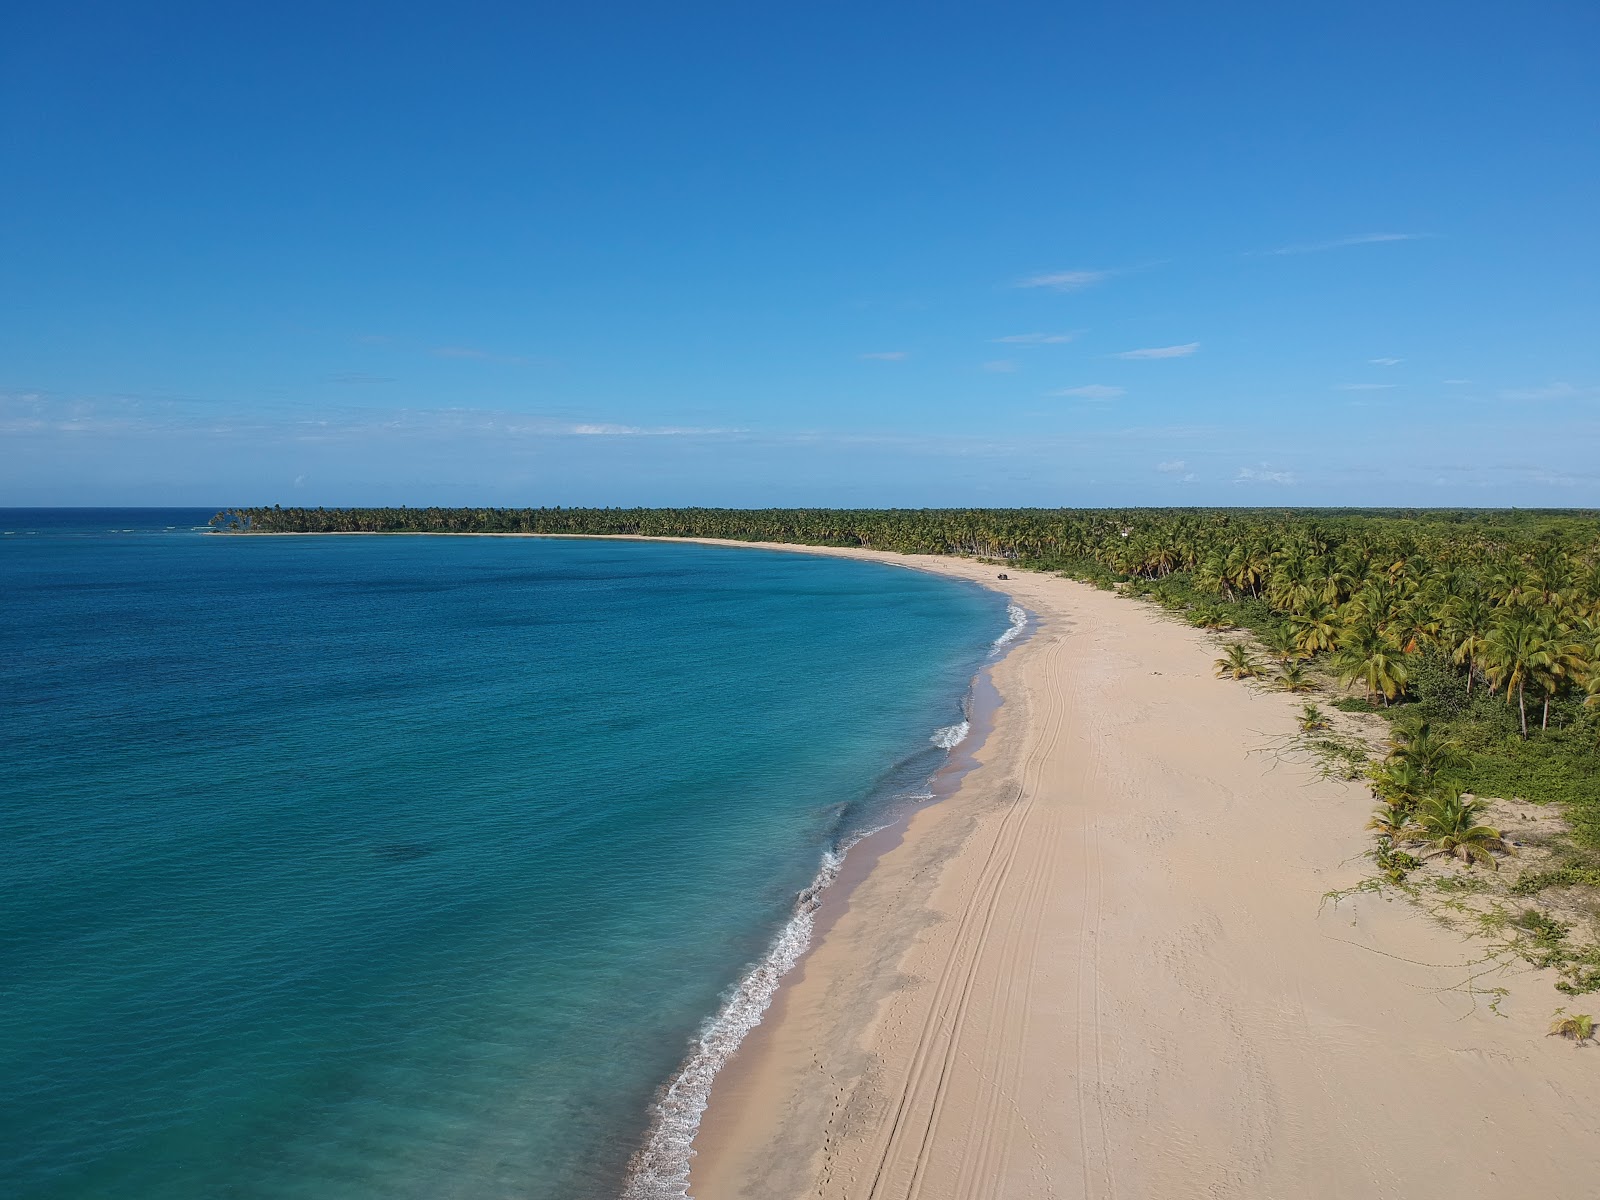 Foto di Spiaggia Esmeralda ubicato in zona naturale